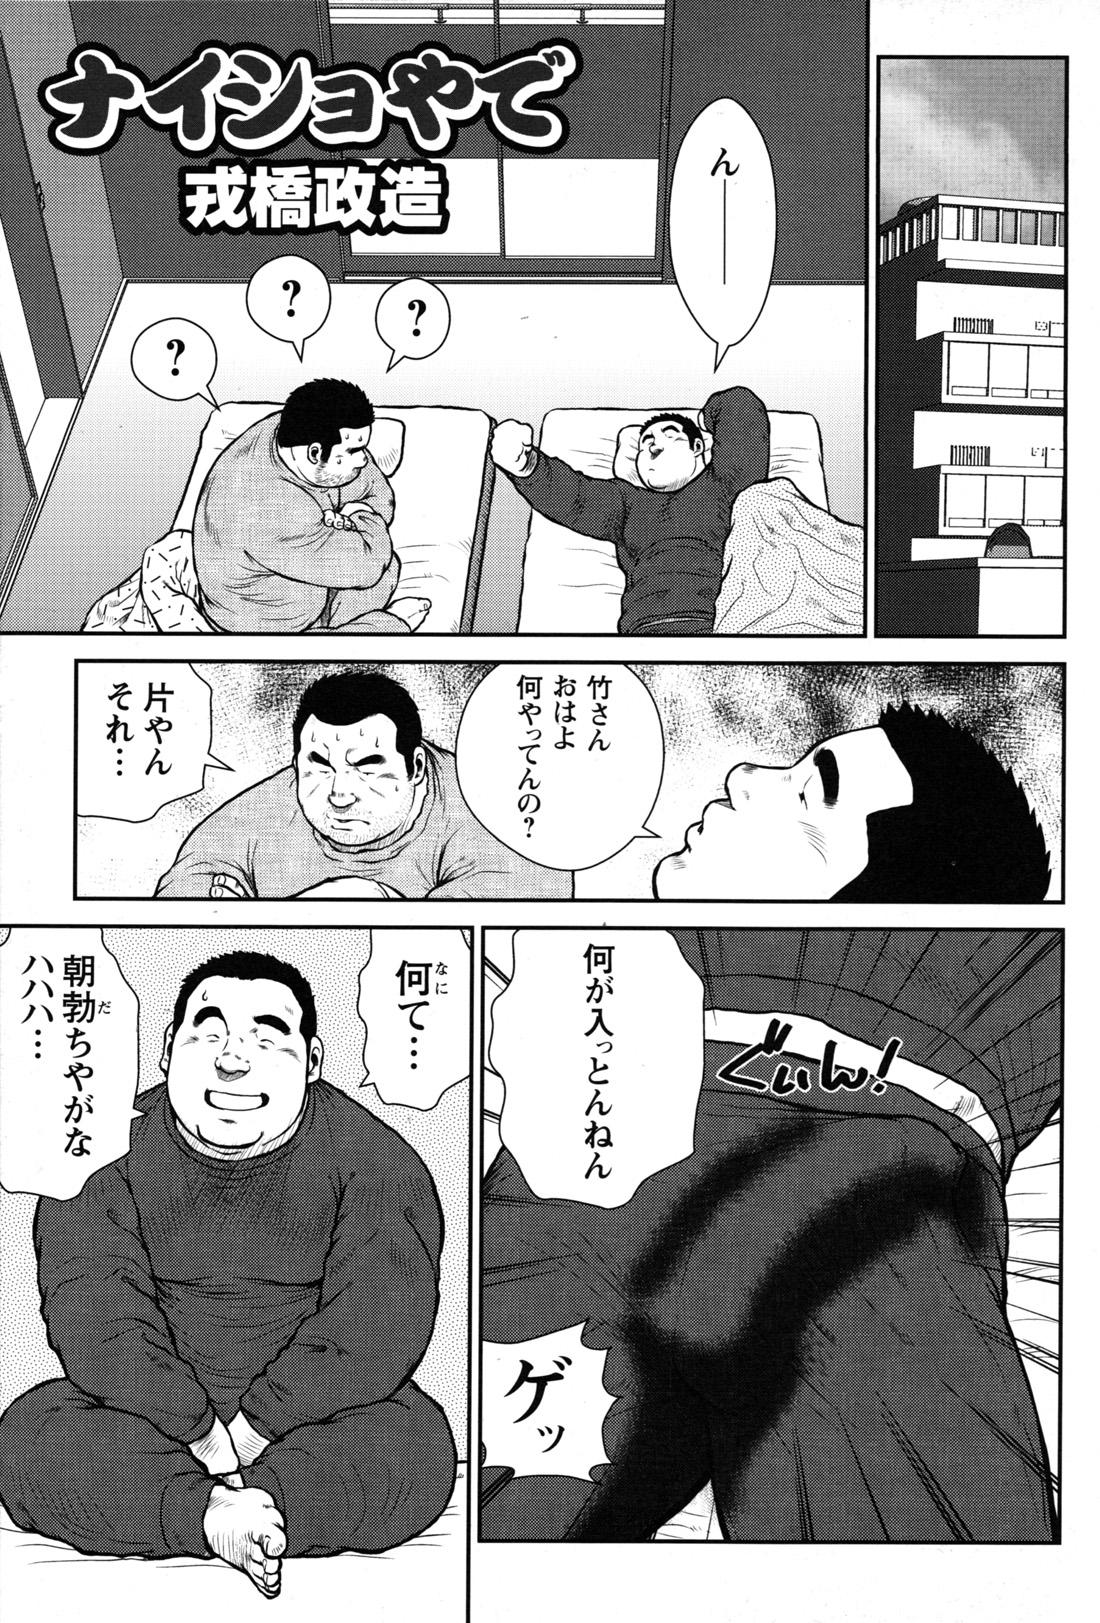 Comic G-men Gaho No.09 Gacchibi Zeme 105